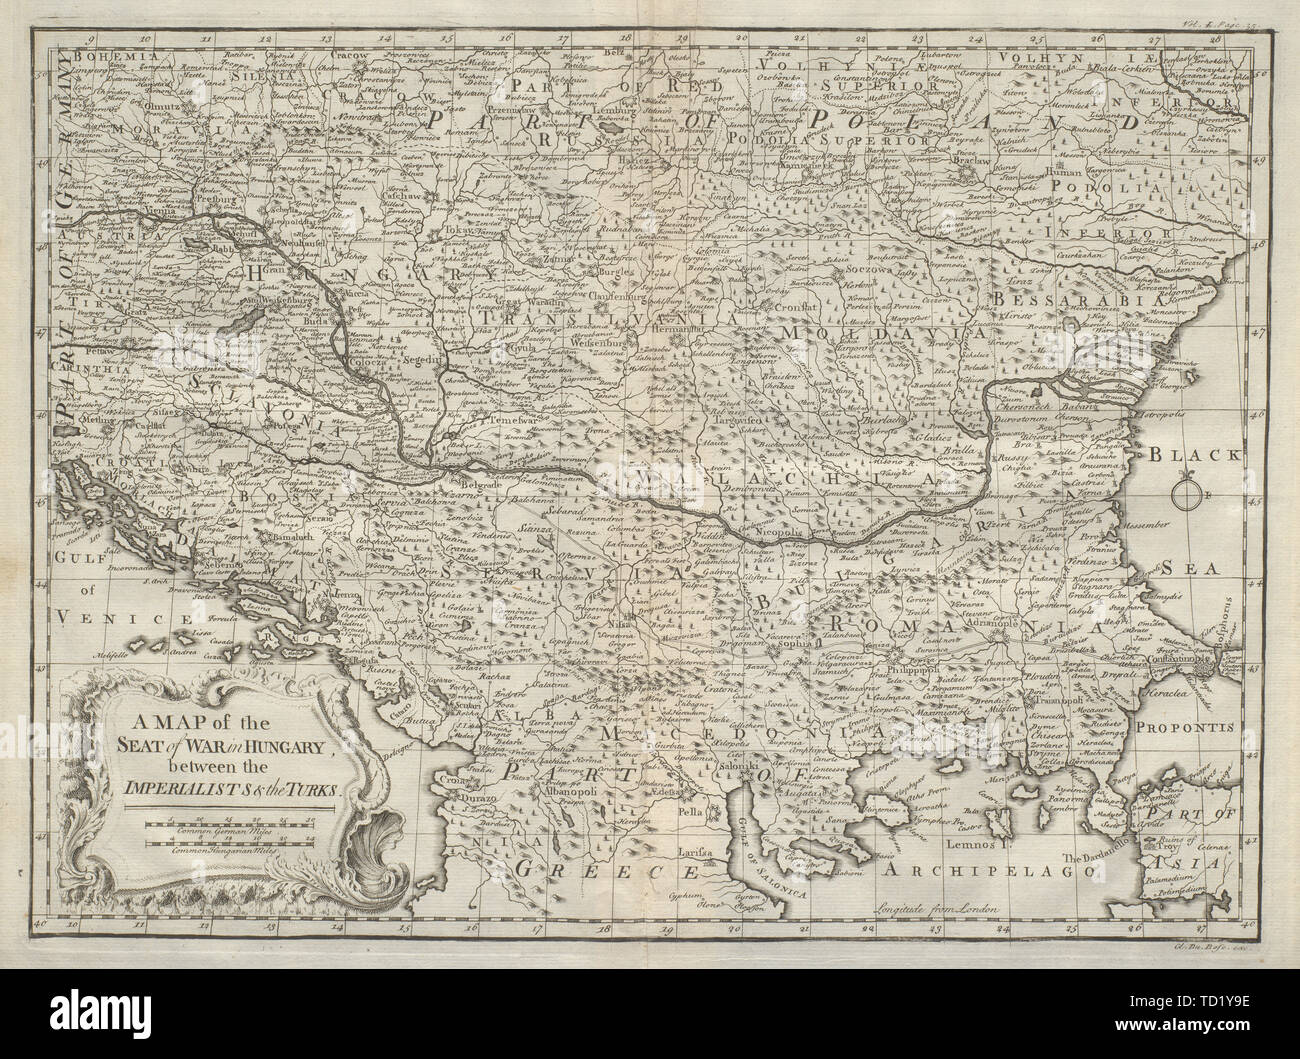 Mappa della sede di guerra in Ungheria tra imperialisti e i Turchi. DU BOSC 1736 Foto Stock